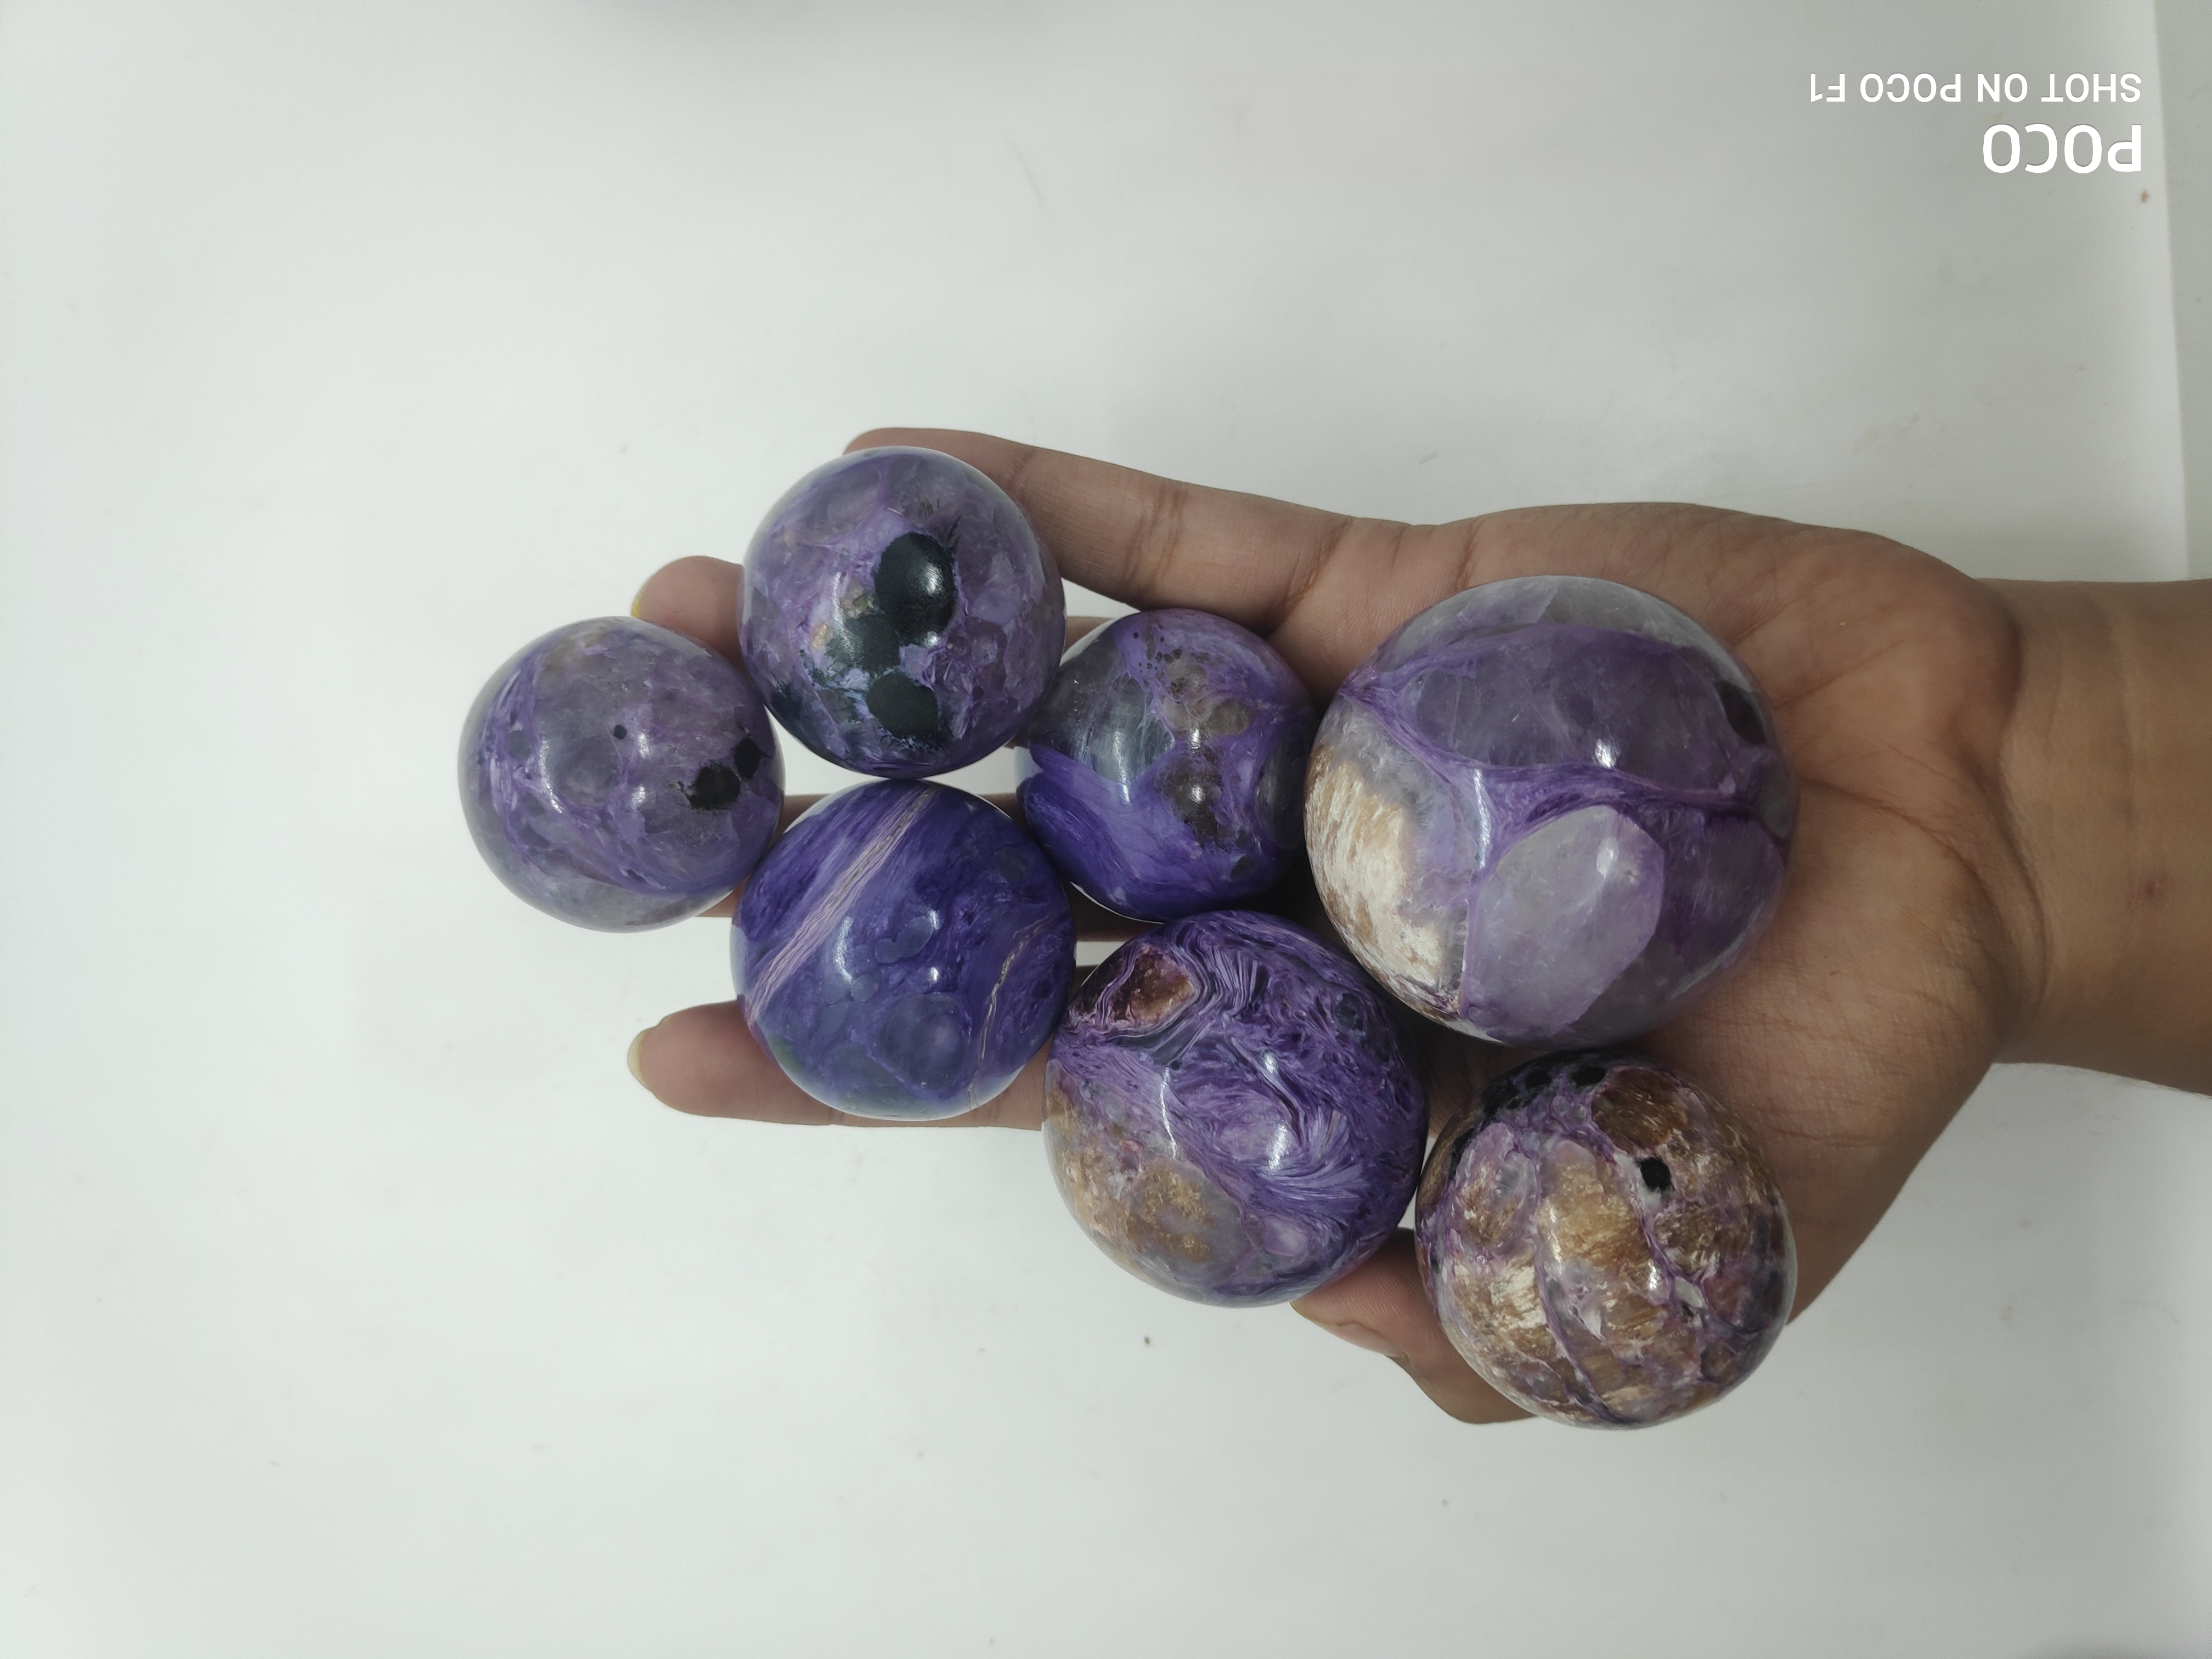 Charoite spheres Gemstones